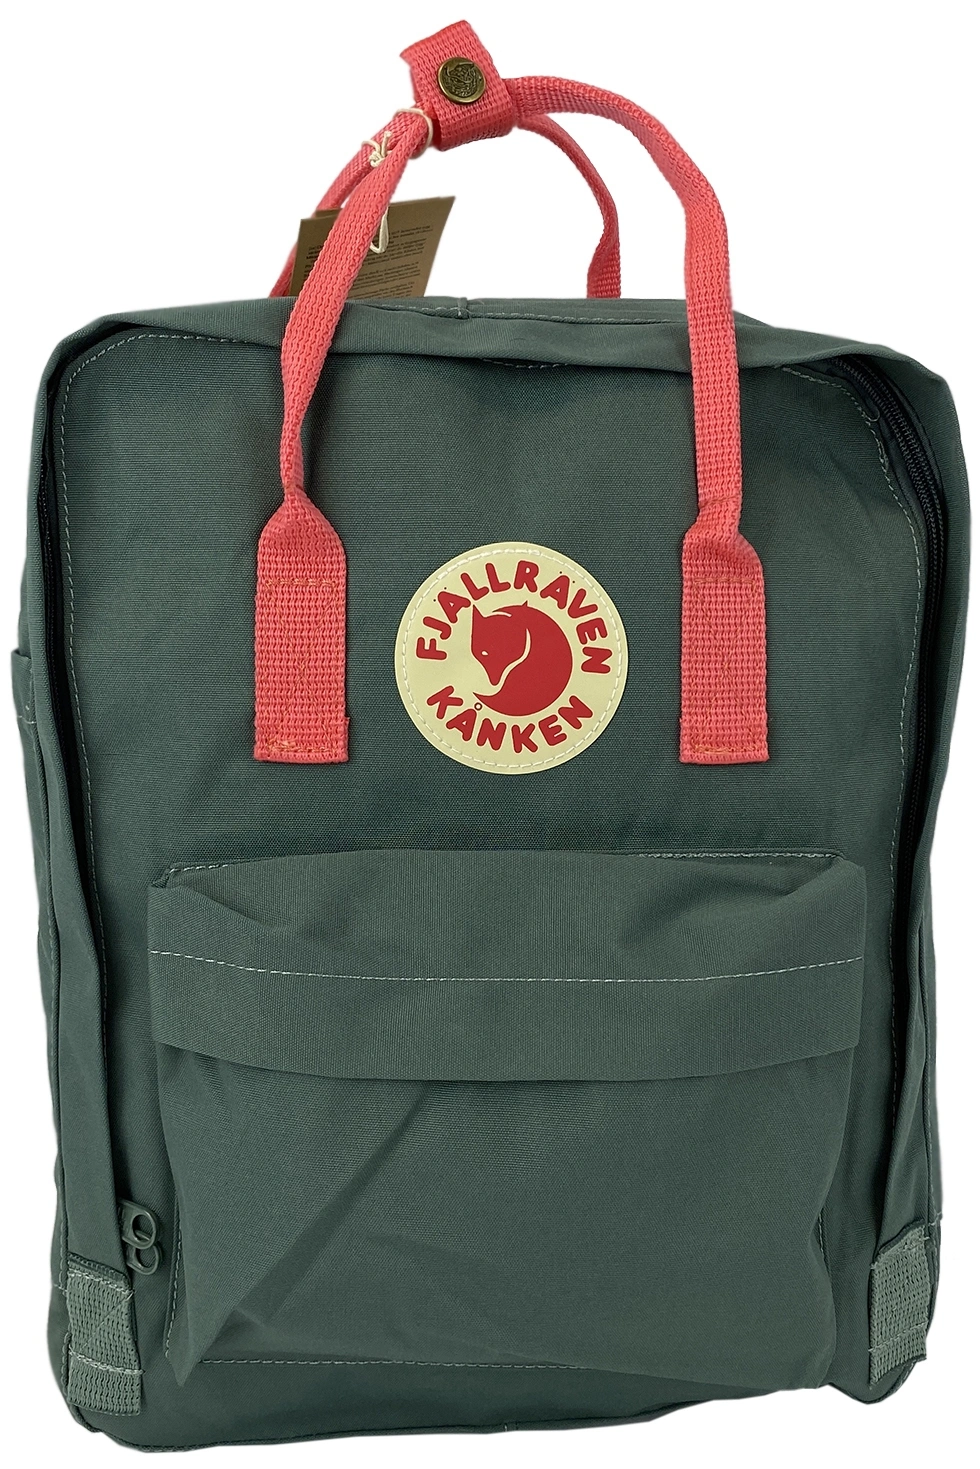 Рюкзак зеленый Kanken 23620 фото 1